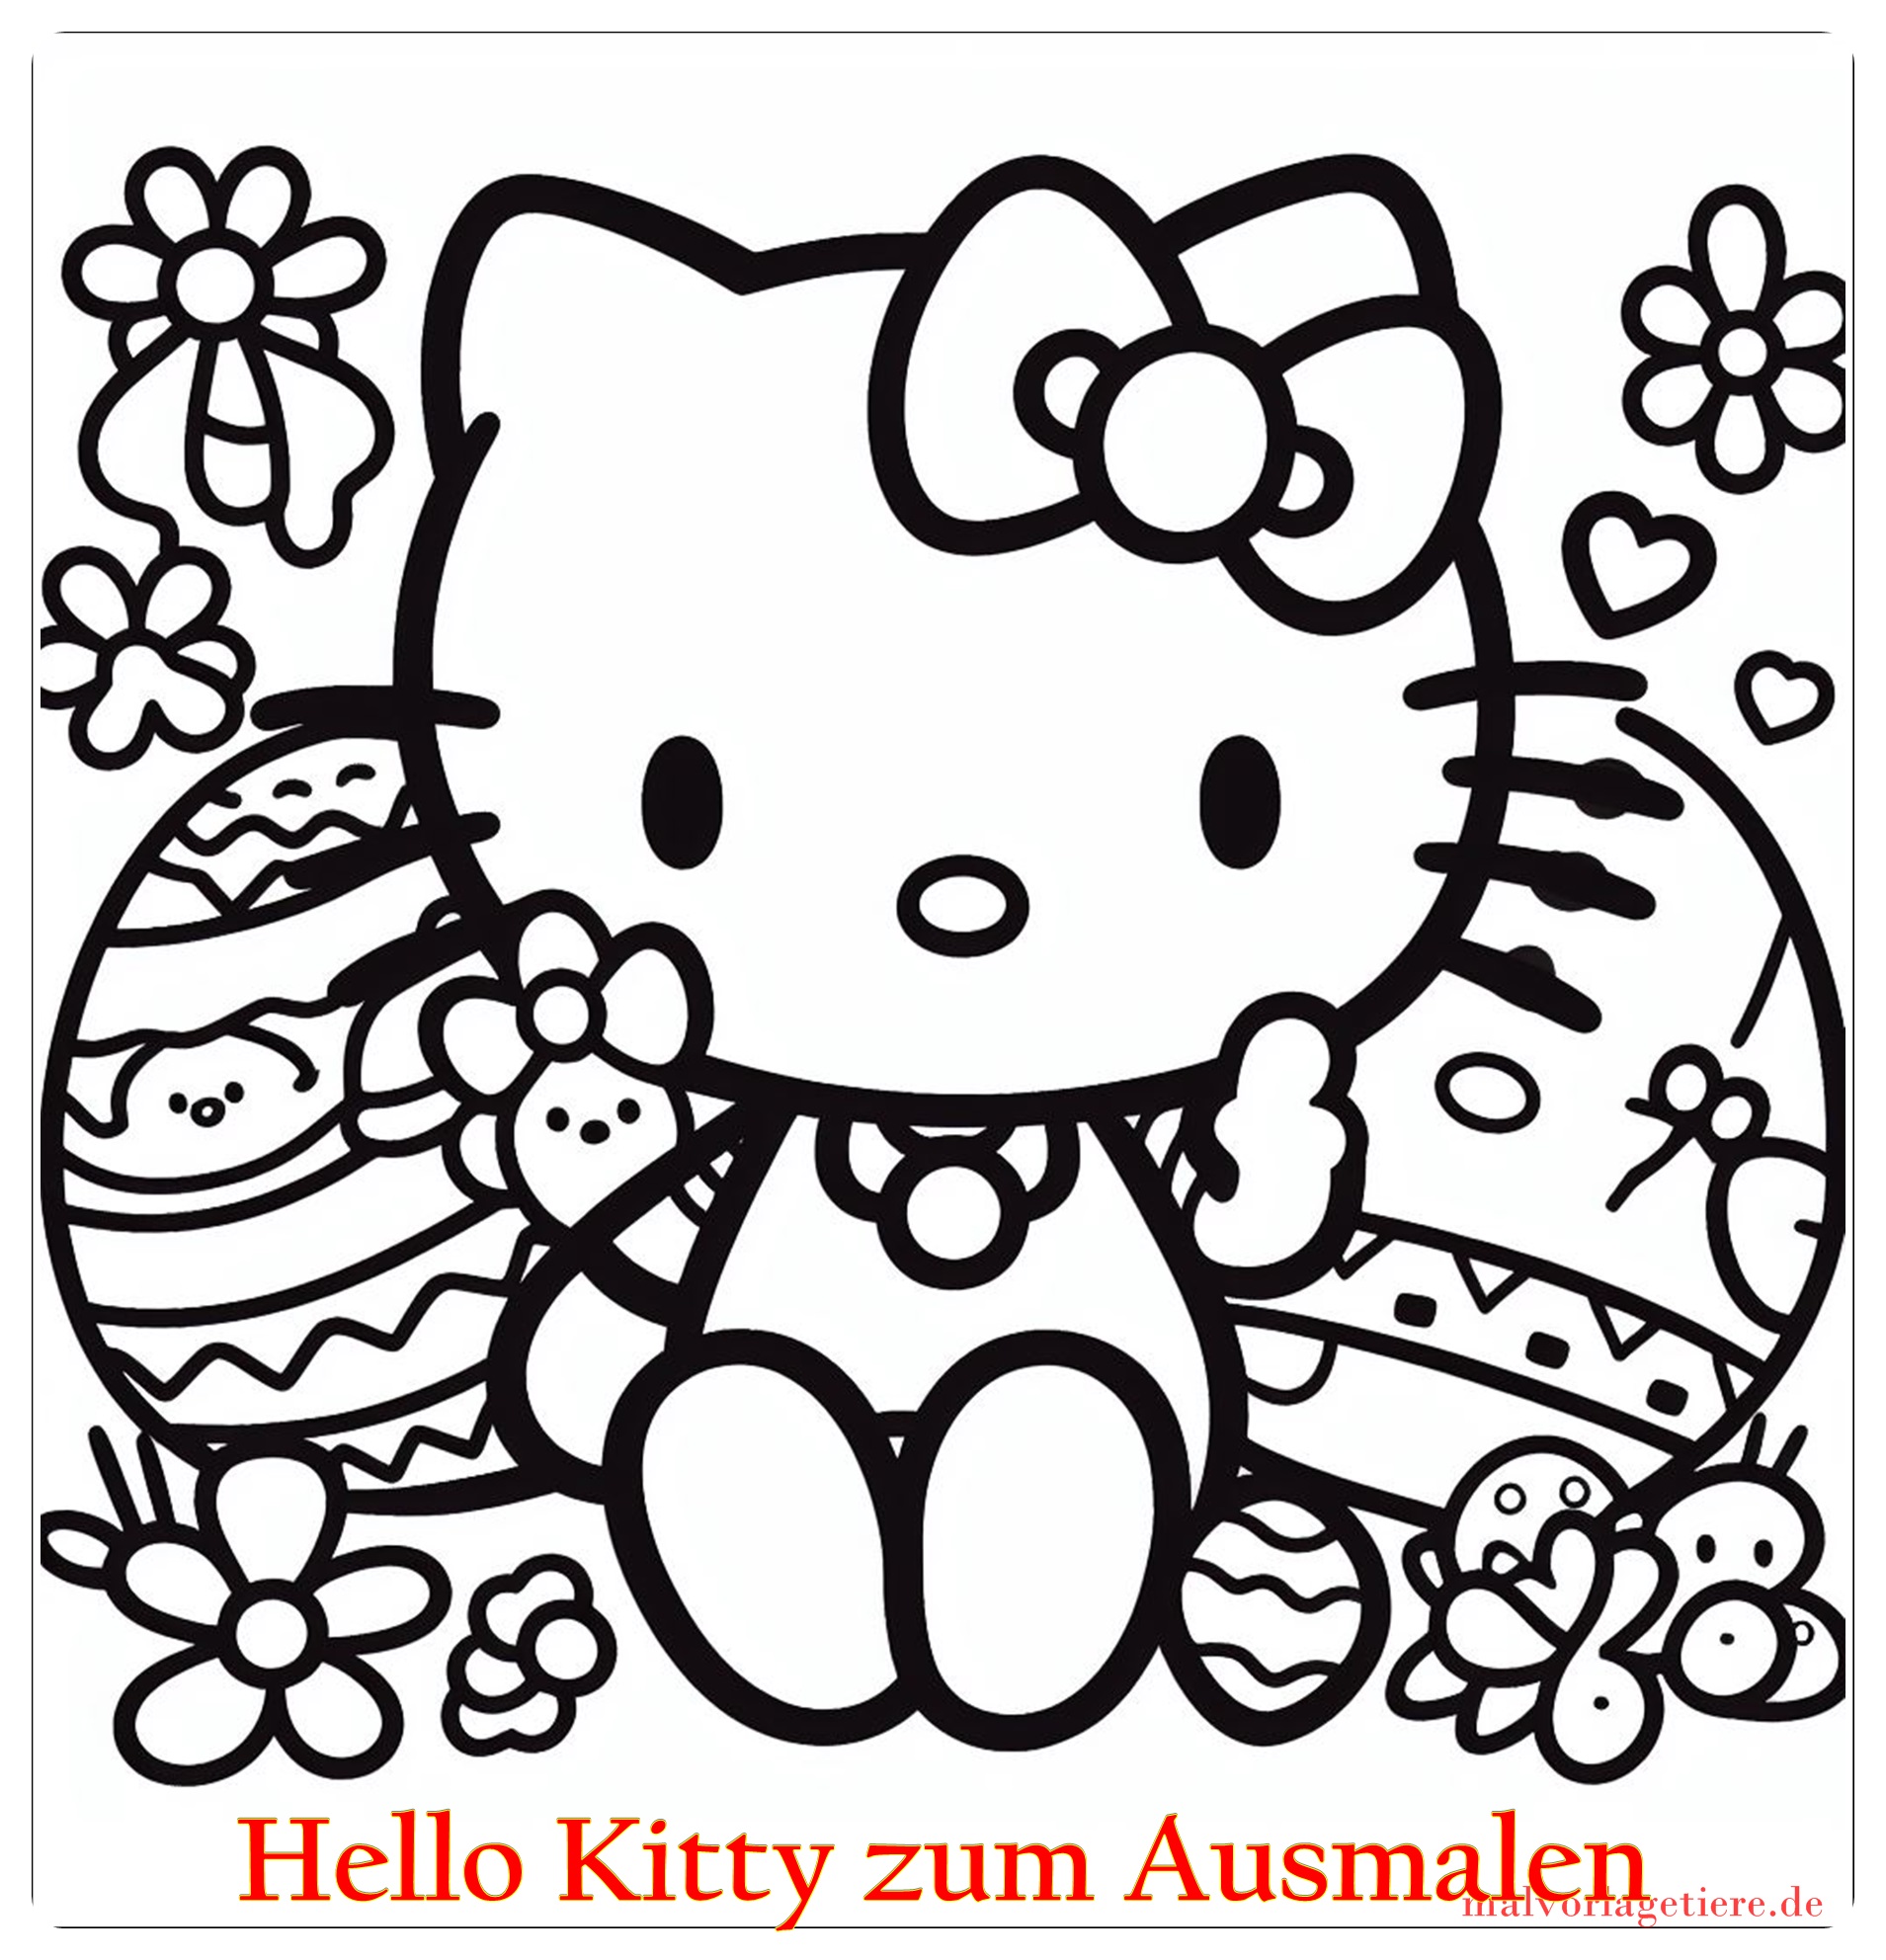 Hello Kitty zum Ausmalen 08 by malvorlagetiere